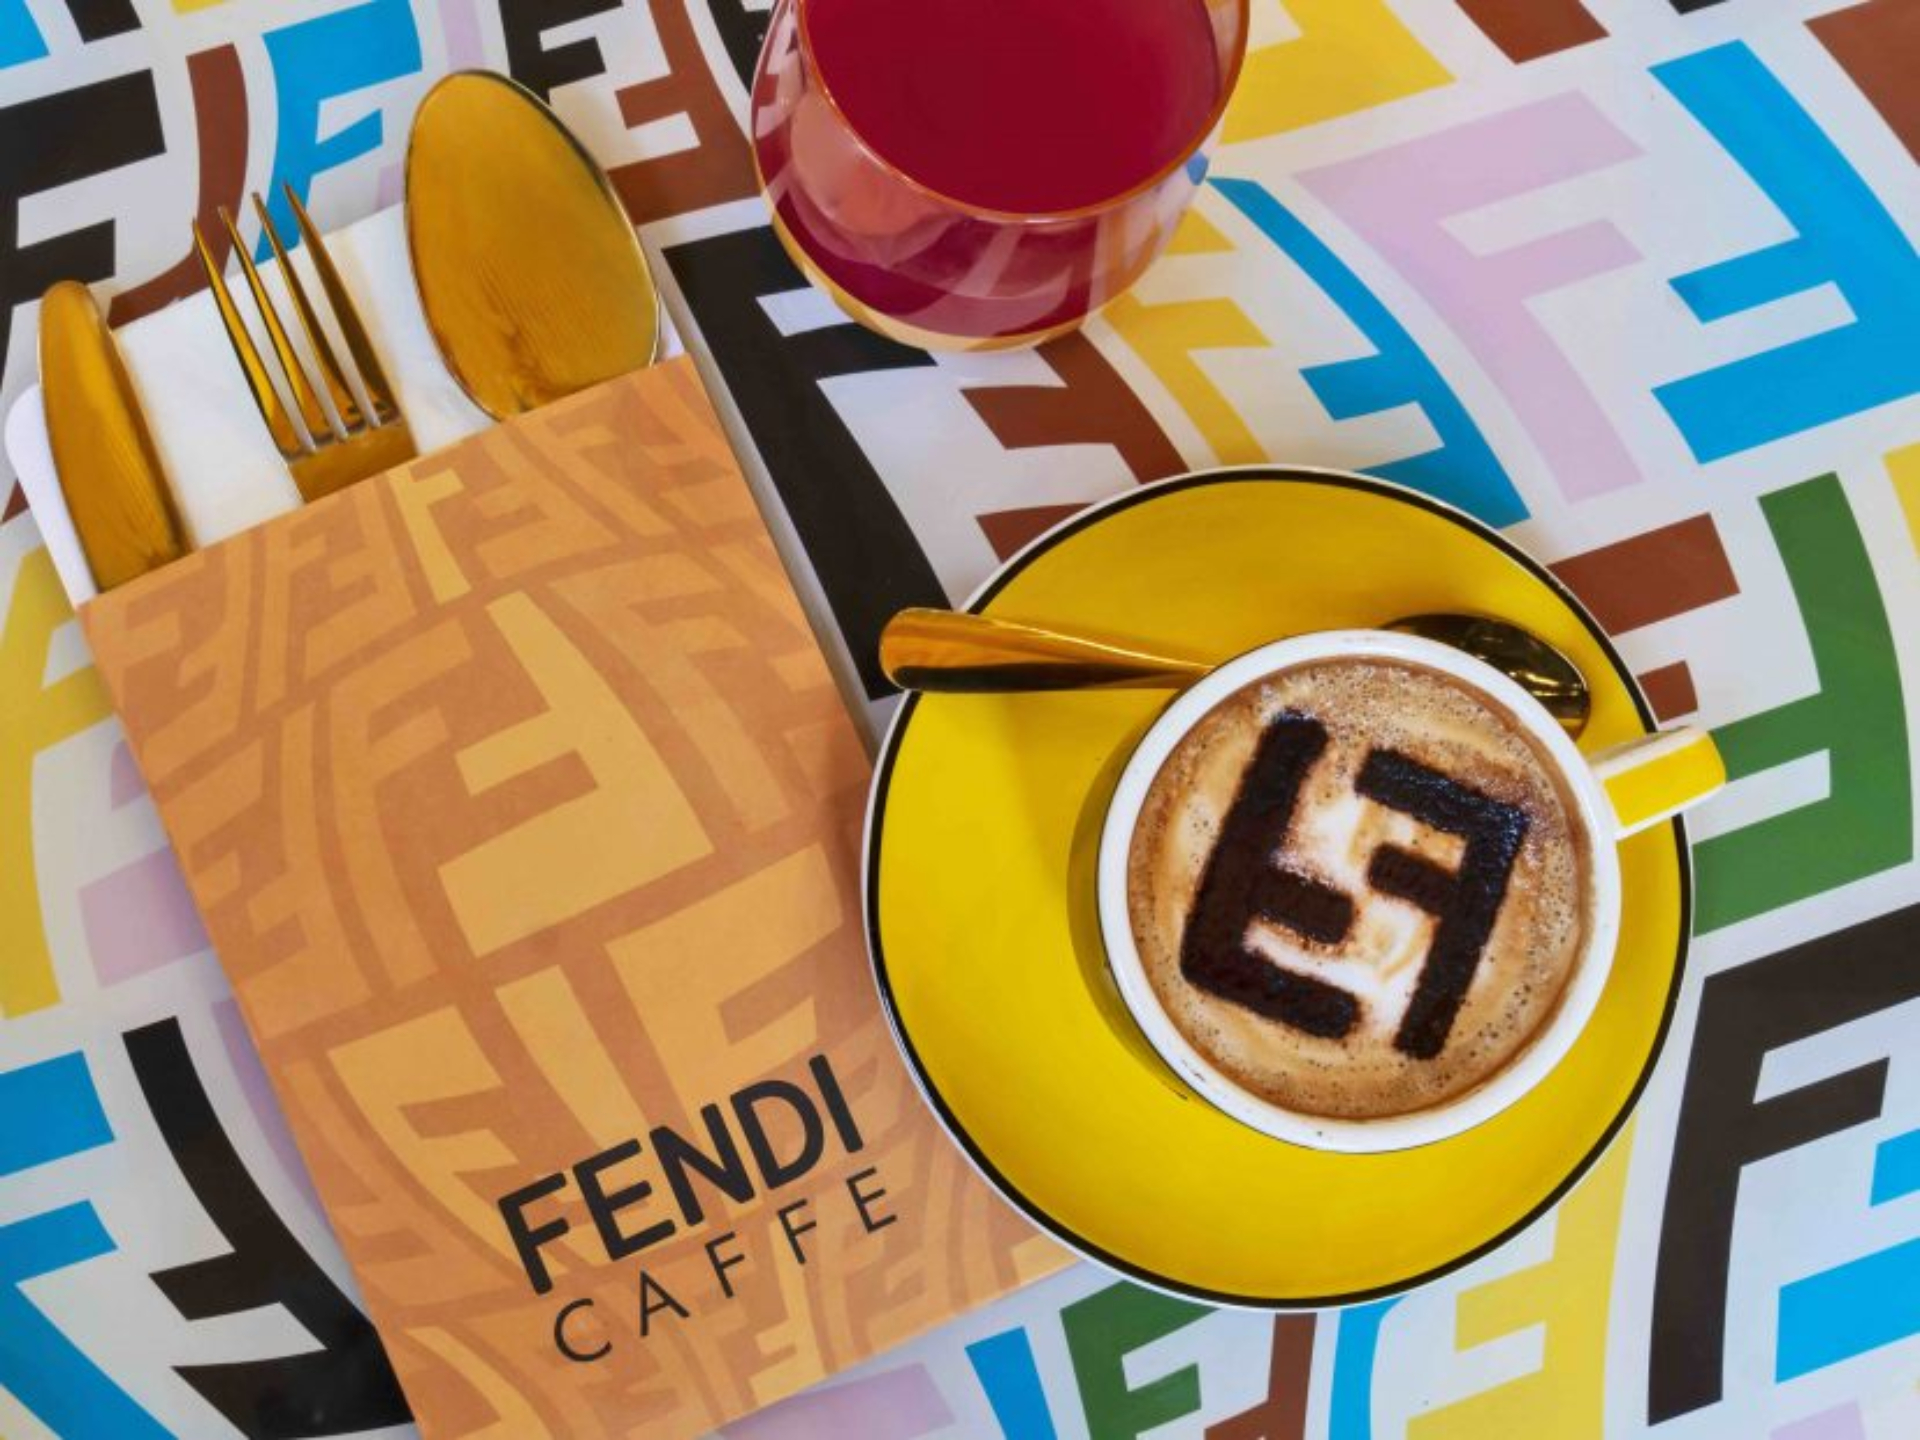 Así es el nuevo Fendi Caffé en Miami: imágenes para conocerlo